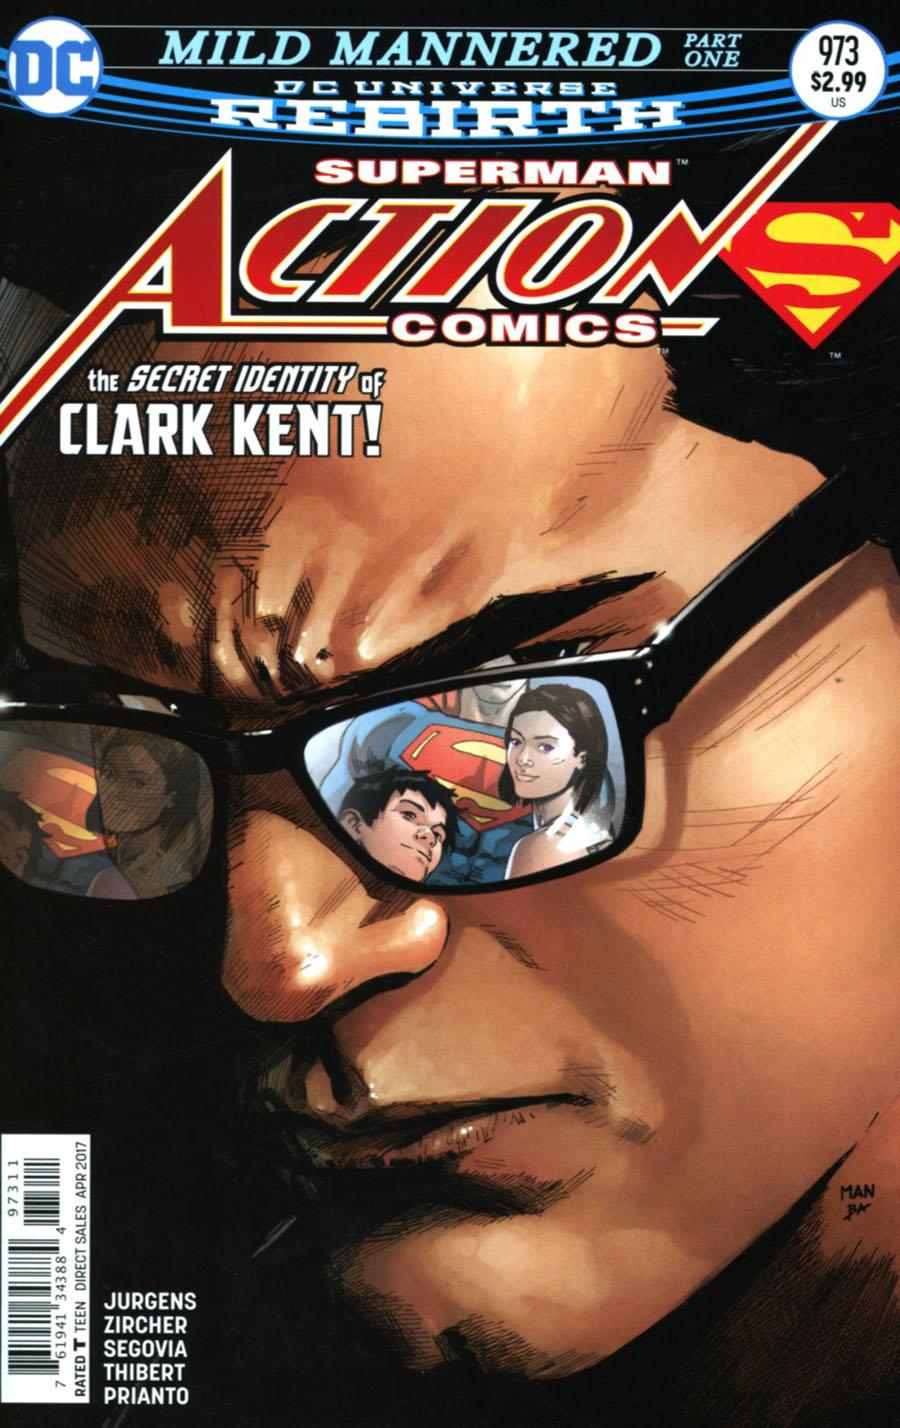 Action Comics Vol. 2 #973